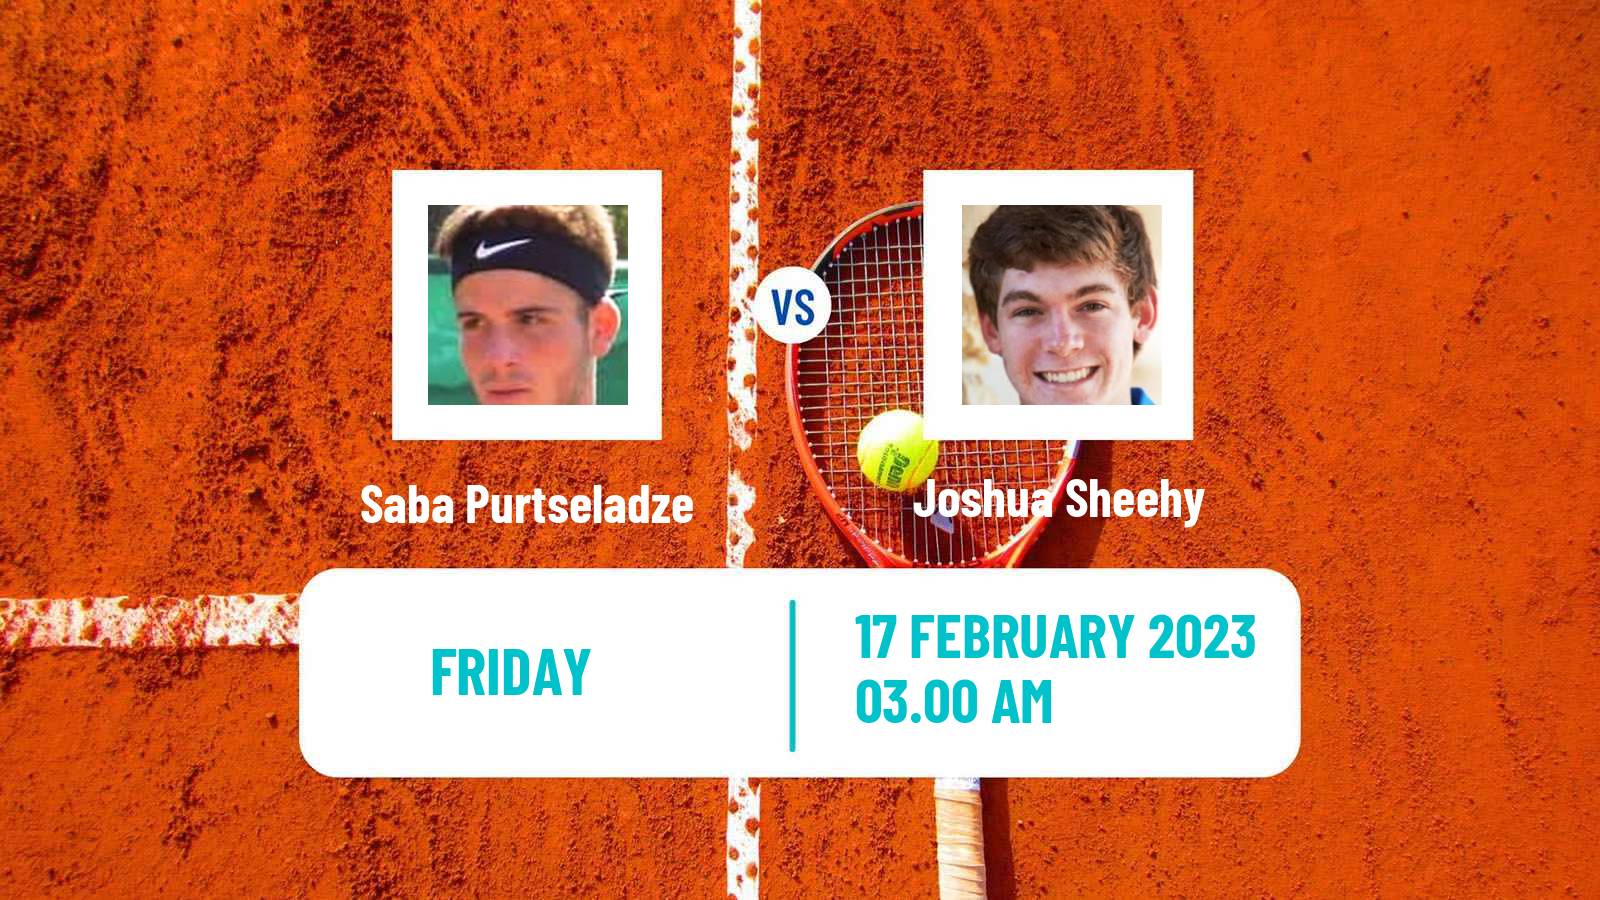 Tennis ITF Tournaments Saba Purtseladze - Joshua Sheehy